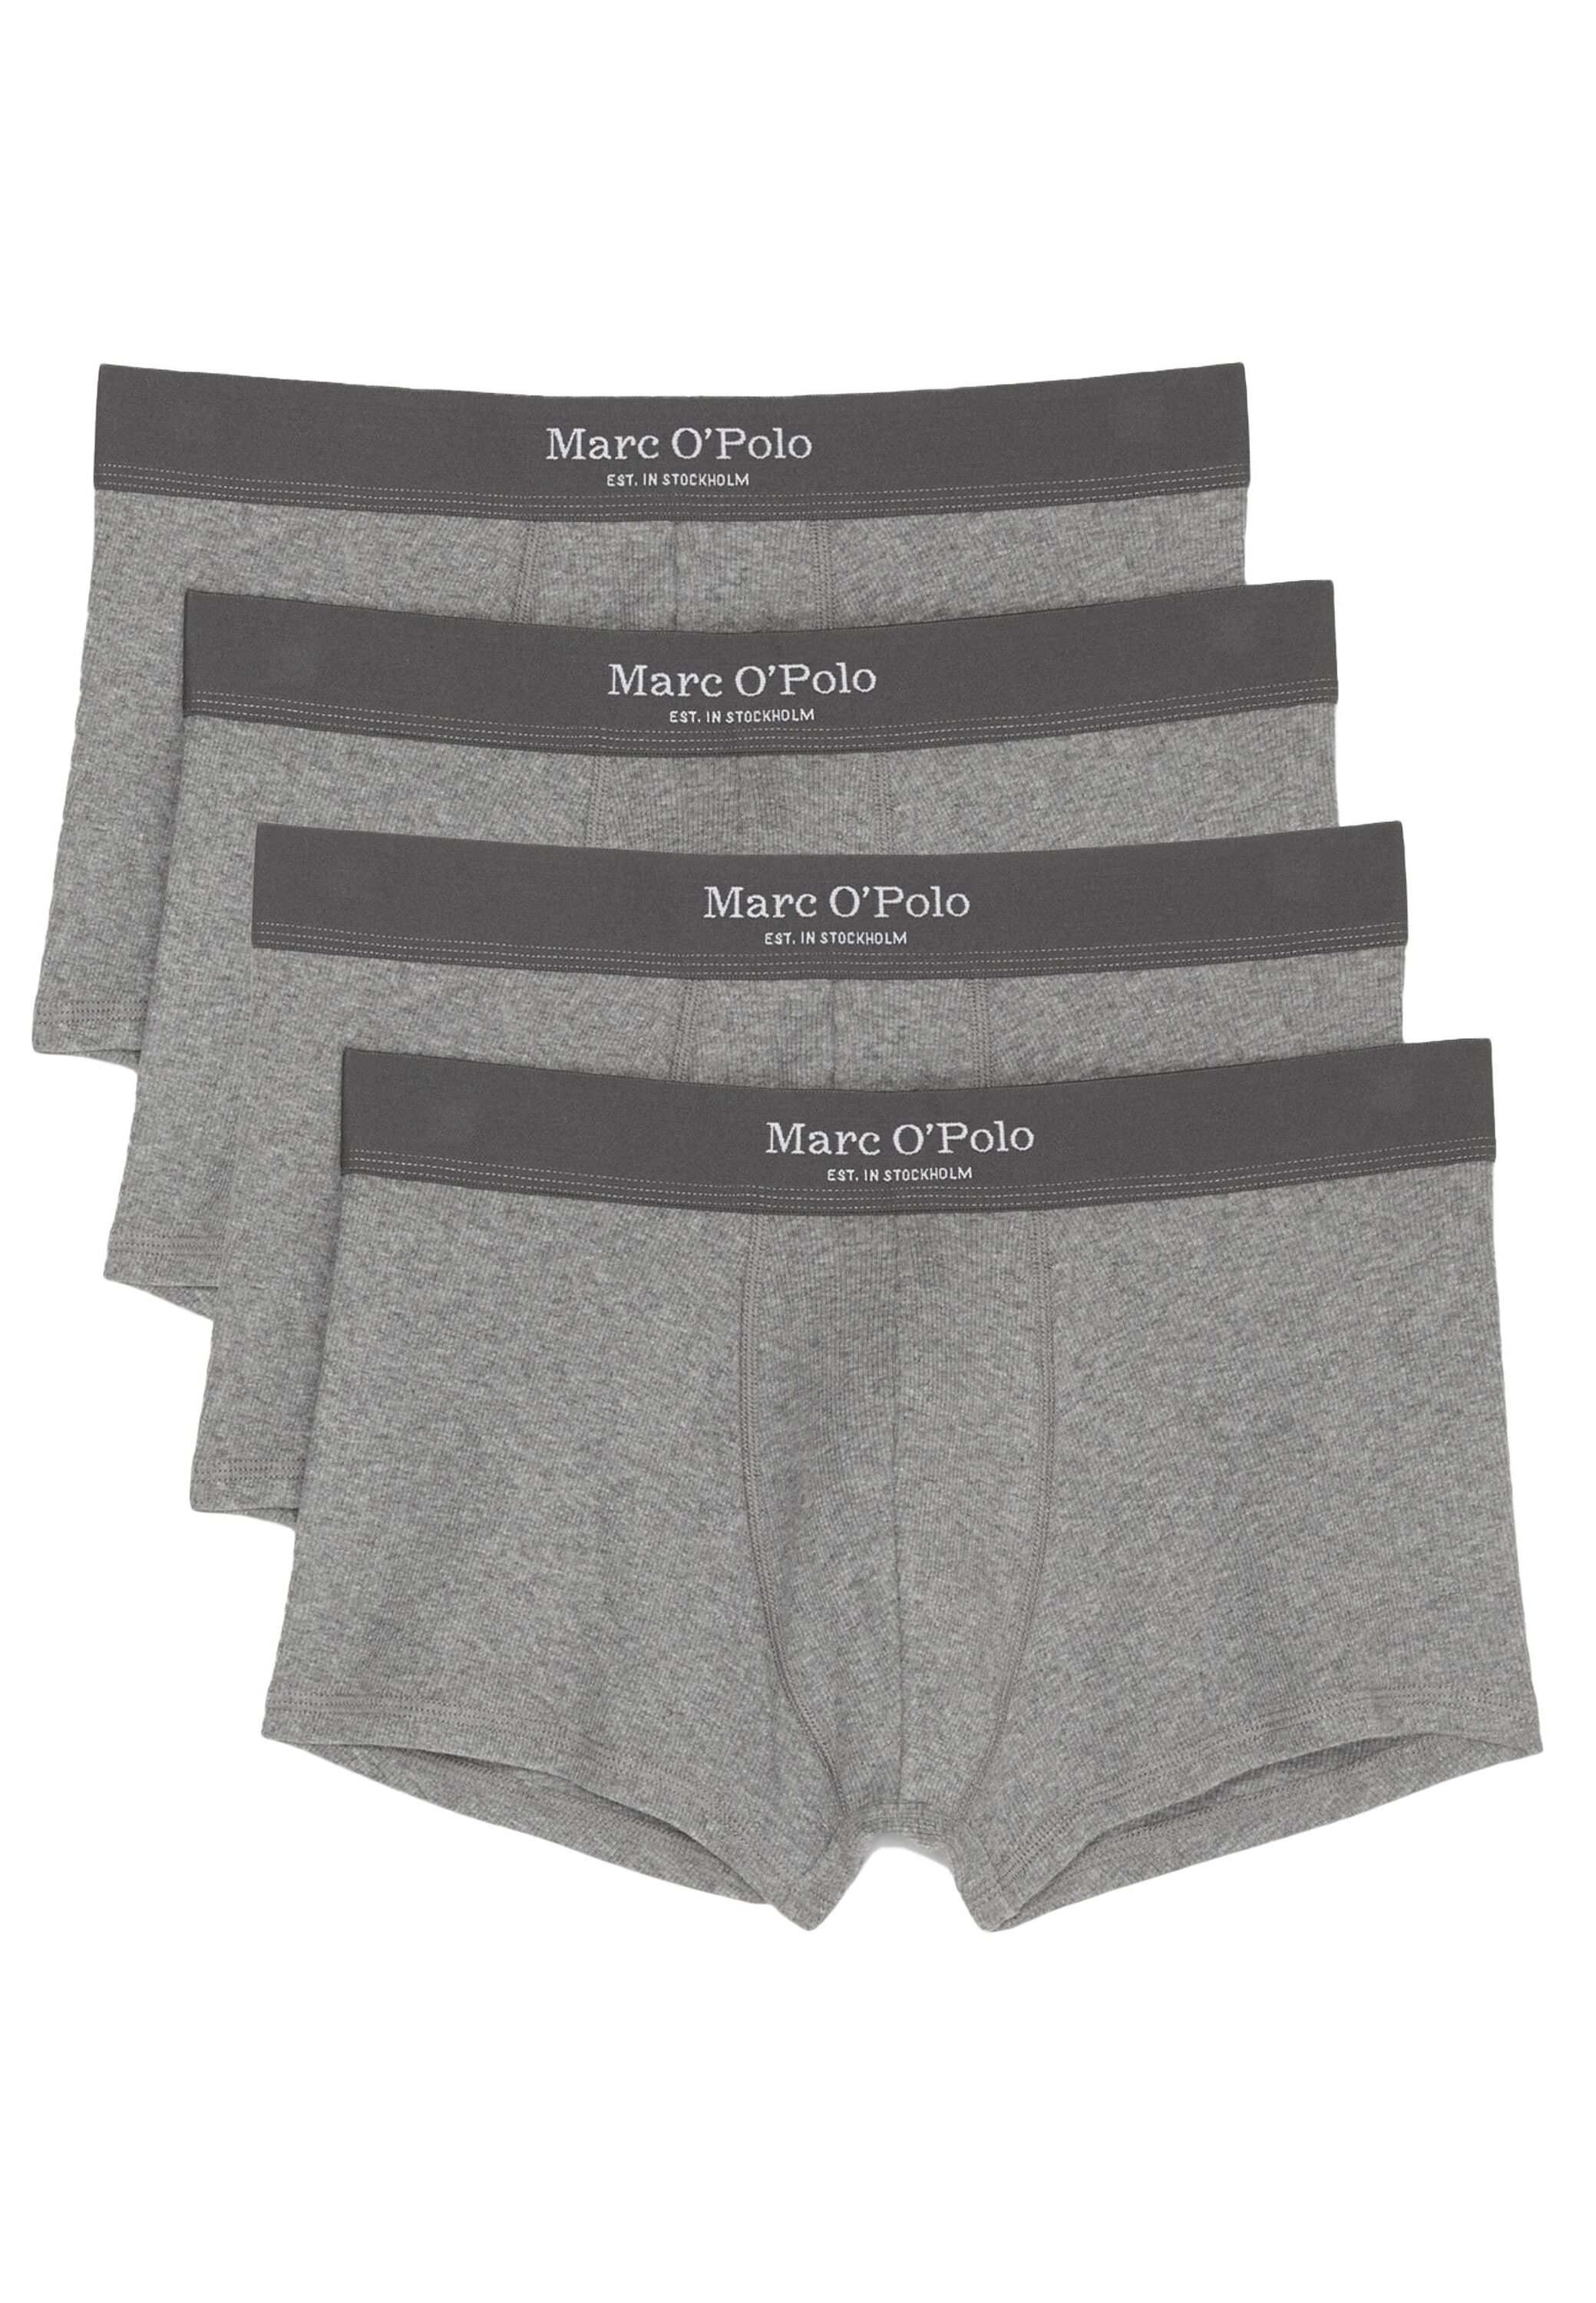 Трусы Marc O´Polo Hipster Short/Pant Iconic Rib, серый куртка marc o polo демисезонная силуэт прямой карманы размер s серый